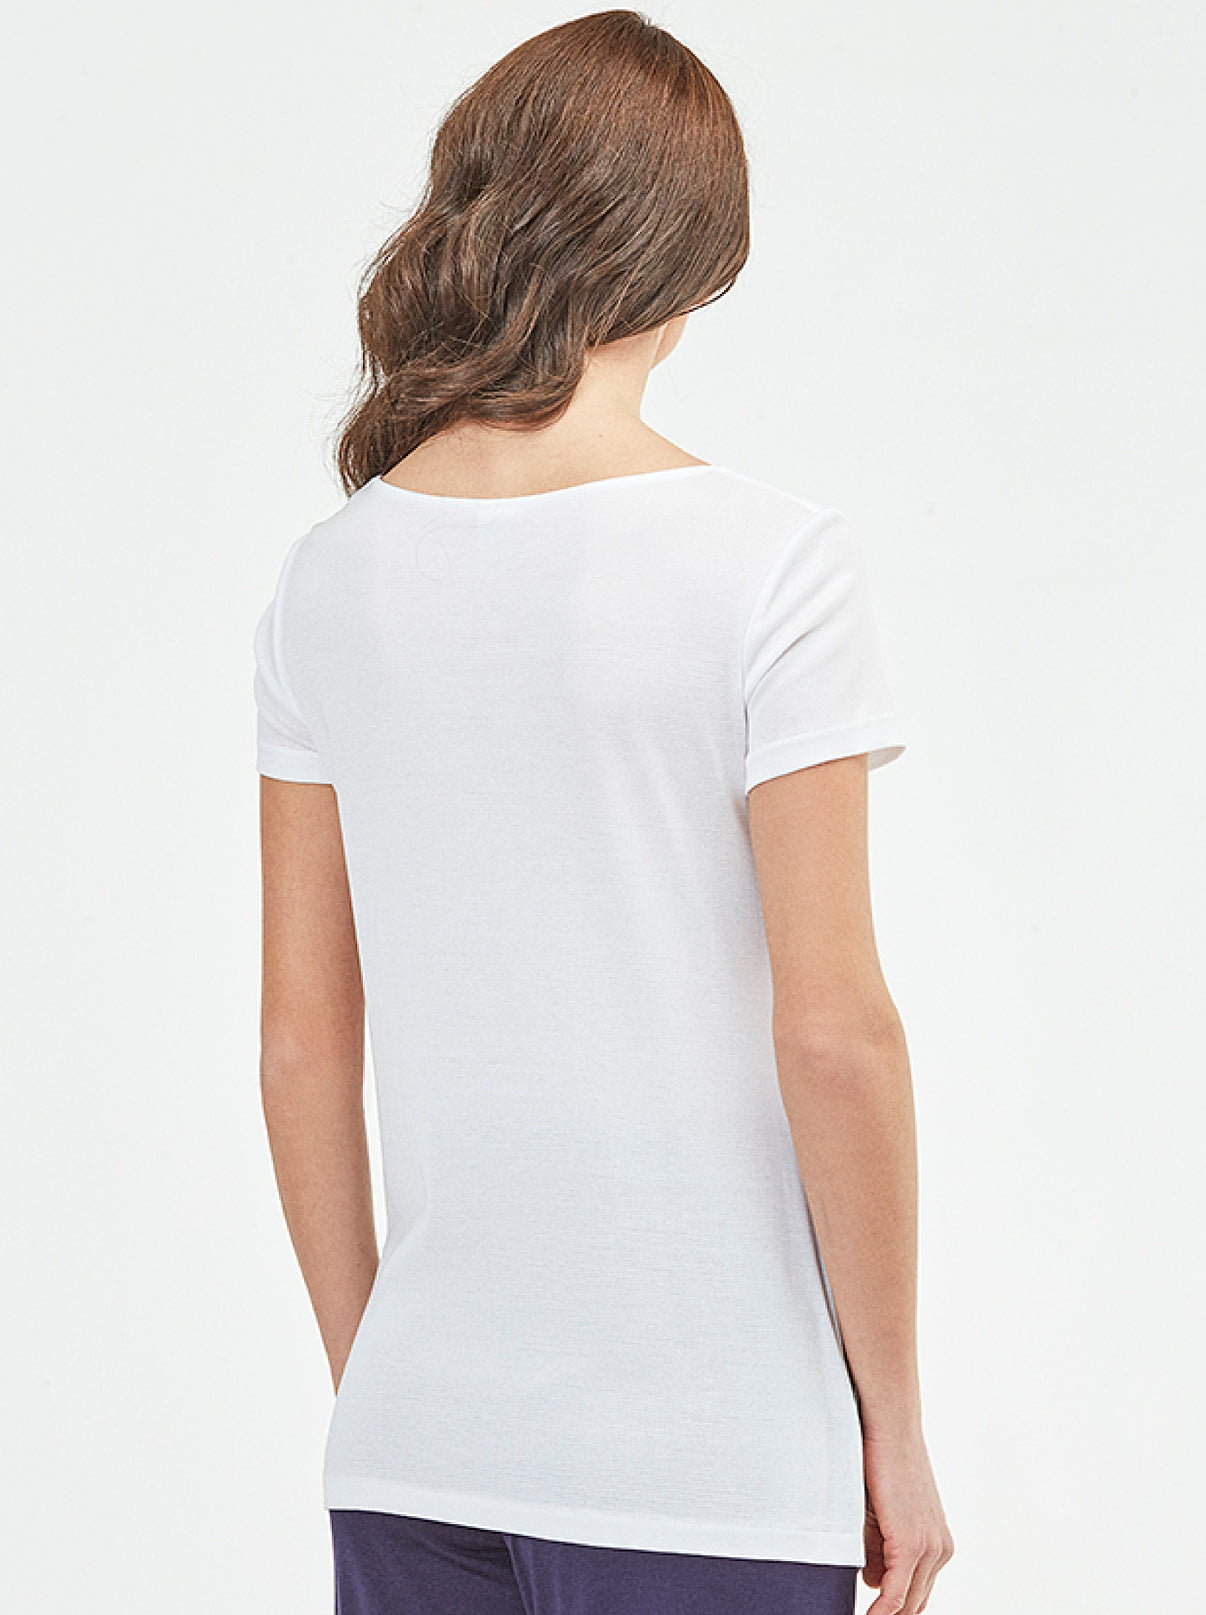 T-shirt Allover Macramé Cotton 5758 - Oscalito